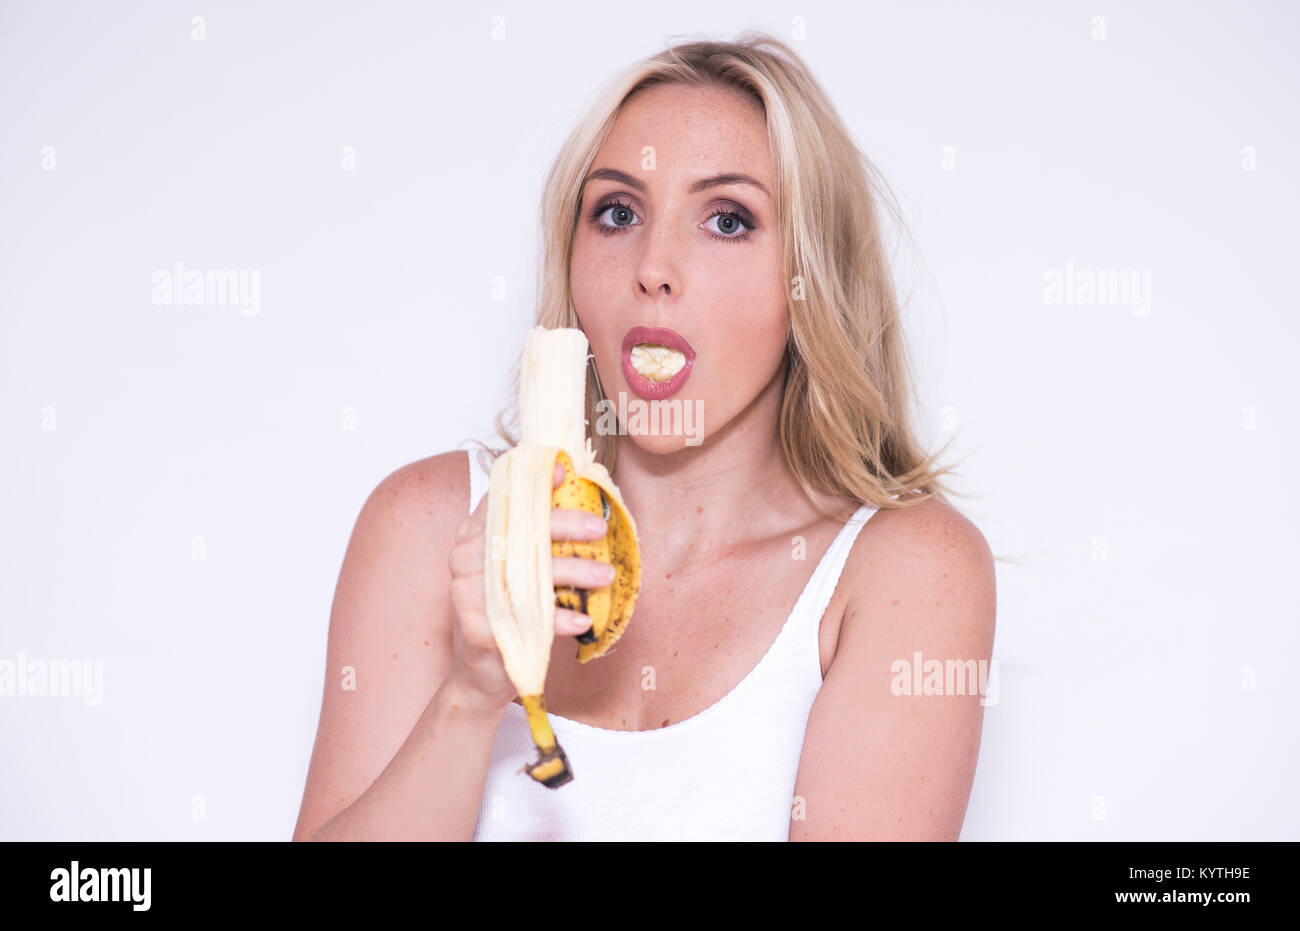 Hübsche blonde Frau isst eine Banane Stockfotografie - Alamy